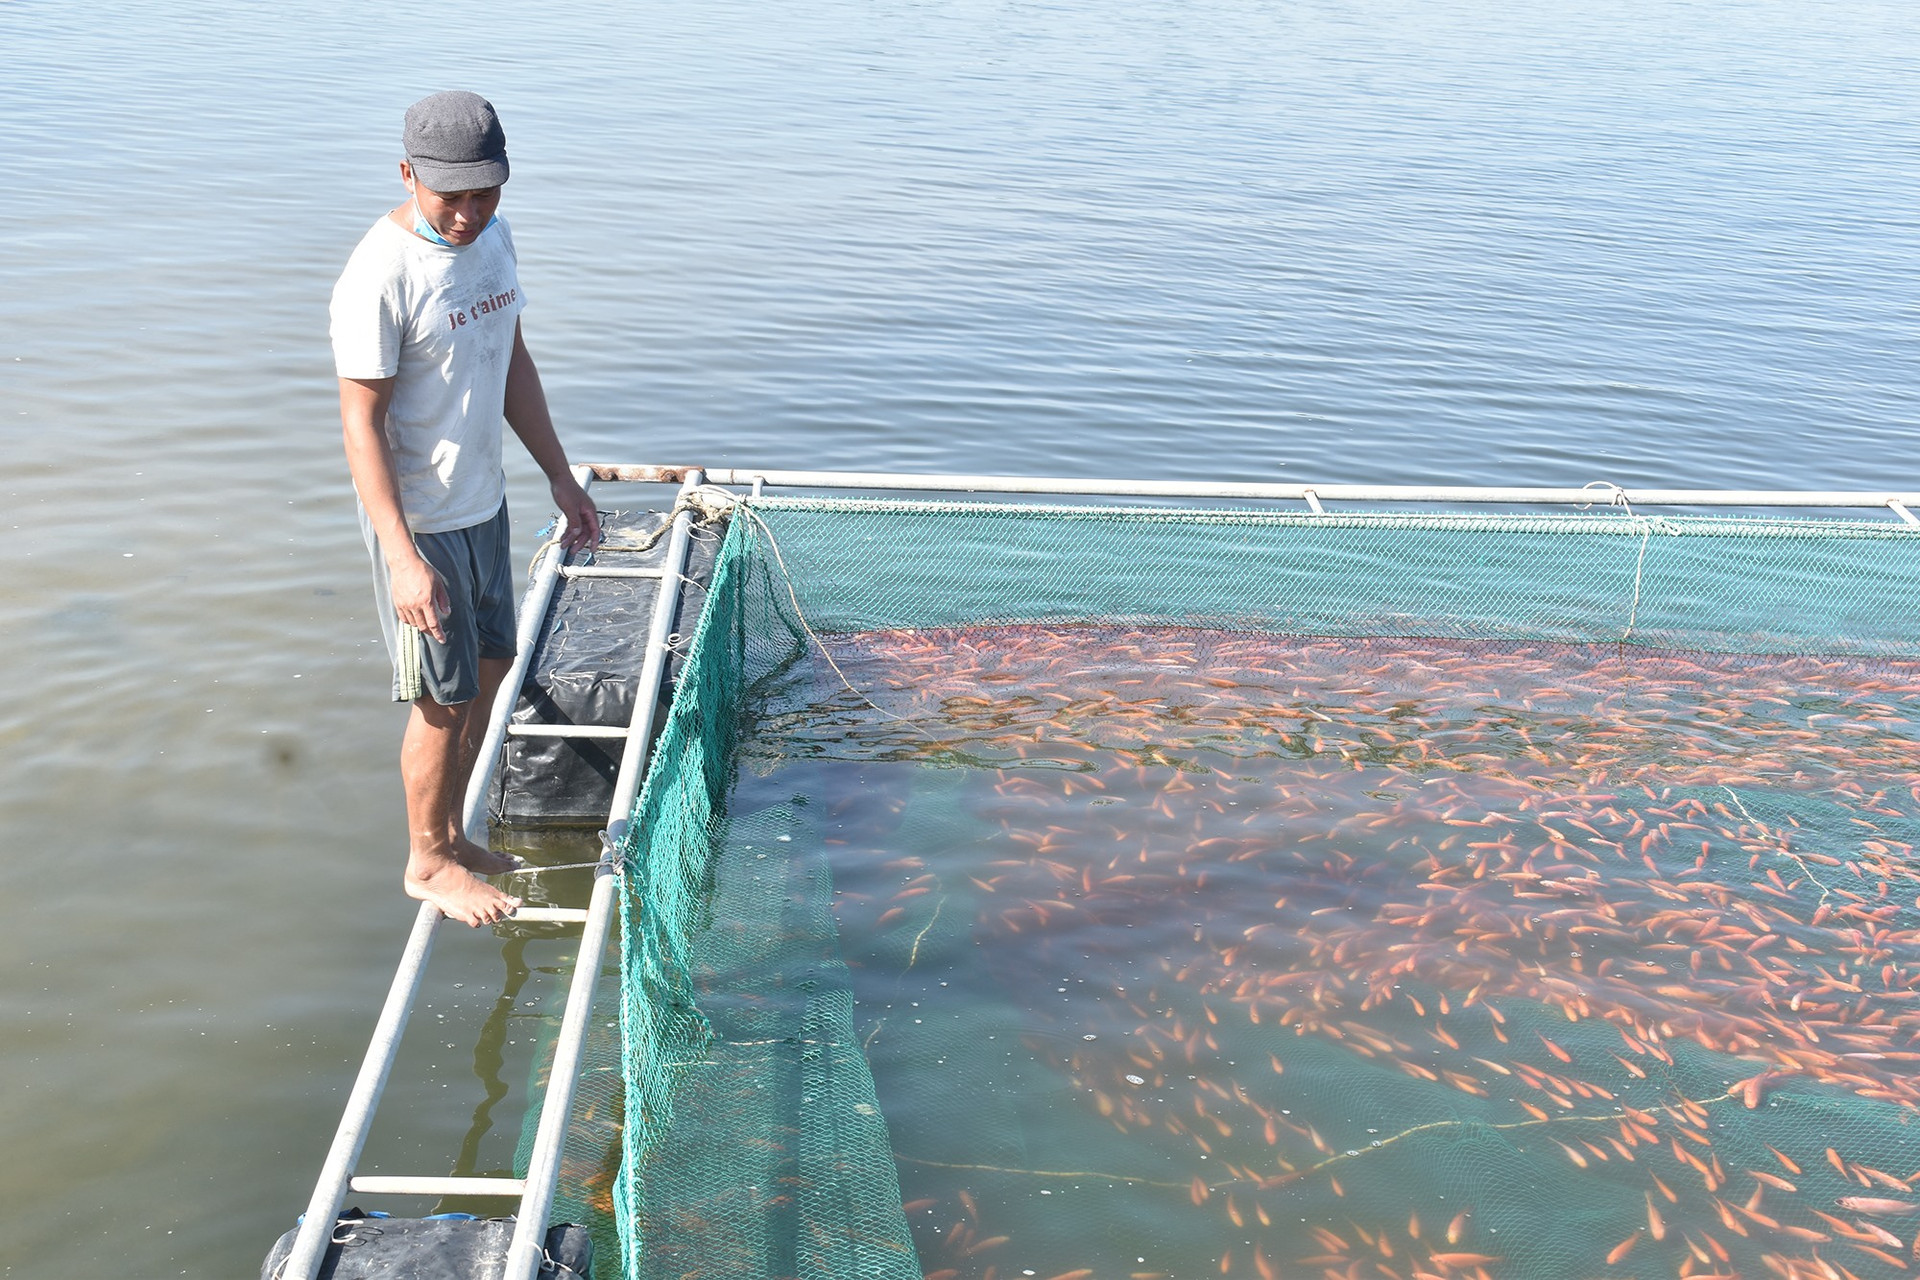 Các chủ nuôi cá lồng bè trên sông Trường Giang thường nuôi cá gần bờ để giảm lượng nước chảy mạnh. Ảnh: H.Q